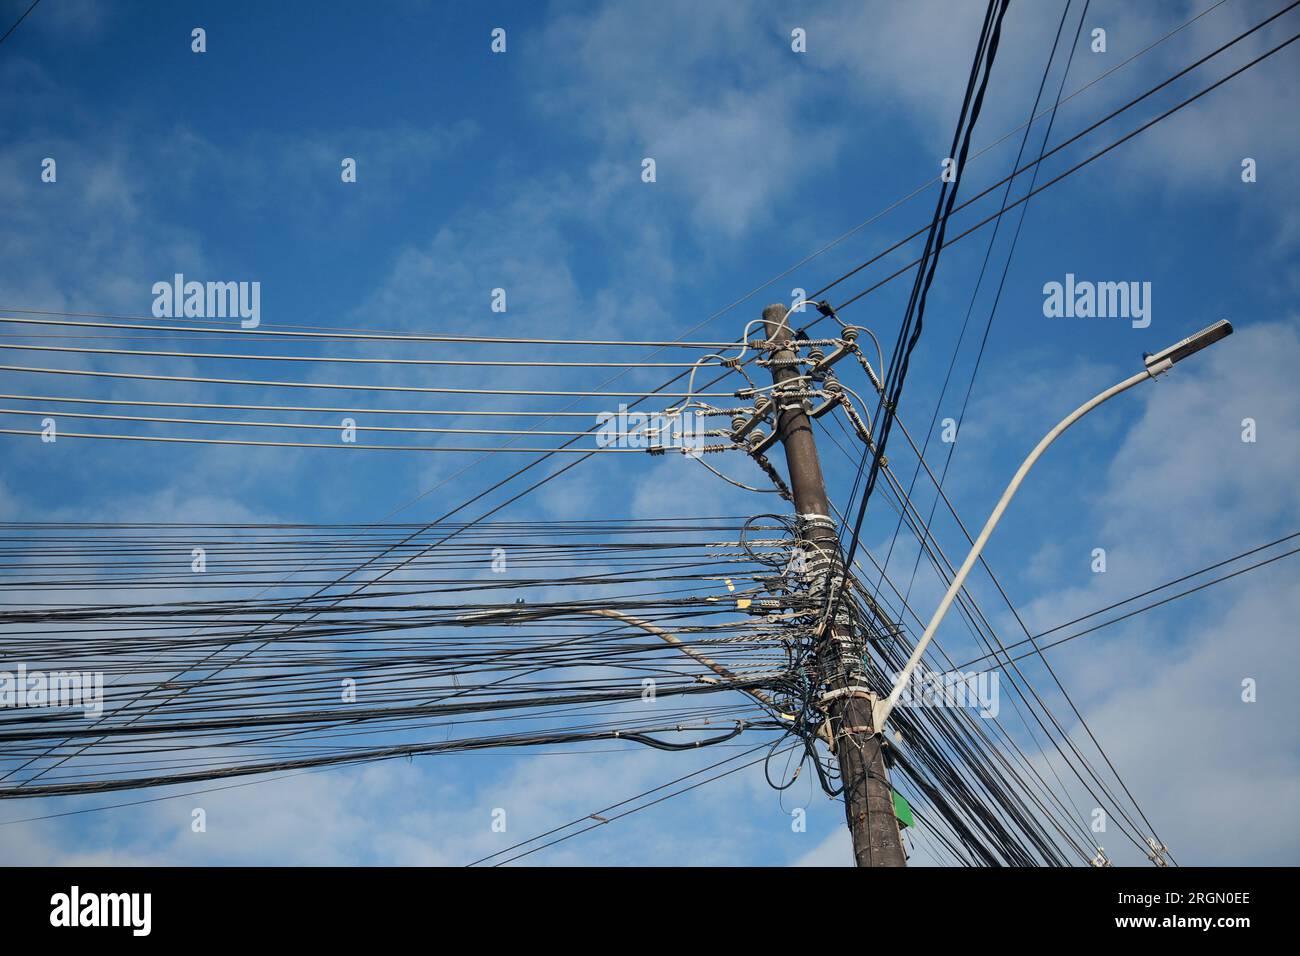 salvador, bahia, brasilien - 25. august 2022: Elektrische Netzwerkverkabelung und TV-Netzwerkkabel auf einem Pol des elektrischen Netzes in der Stadt Salvador. Stockfoto